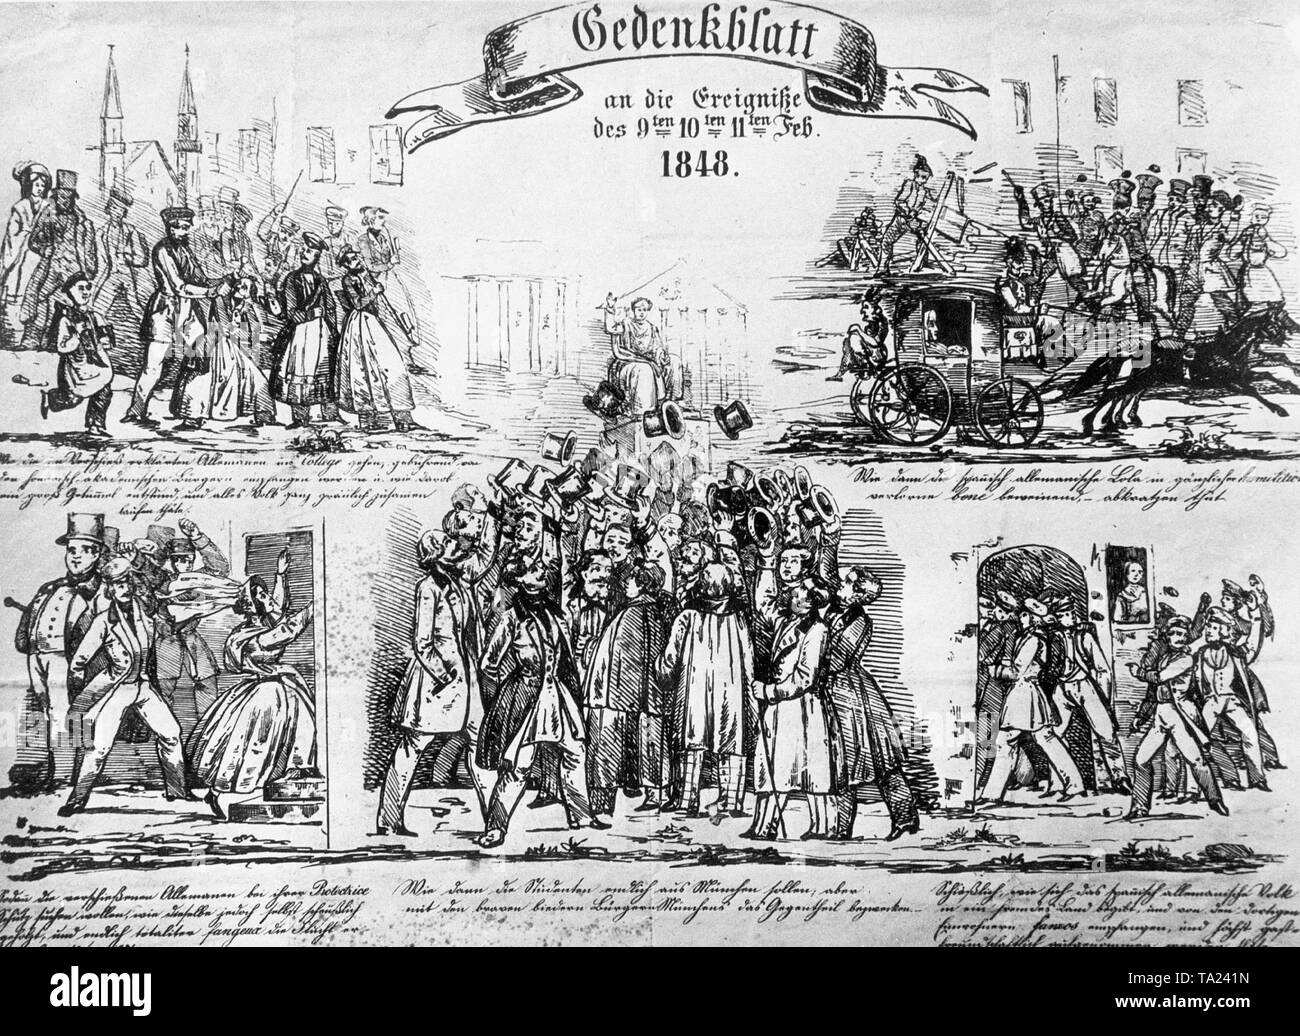 Commemorative Papier der Ereignisse zwischen dem 9. und 11. Februar 1848, die Revolution in Bayern (Lola Montez). Stockfoto